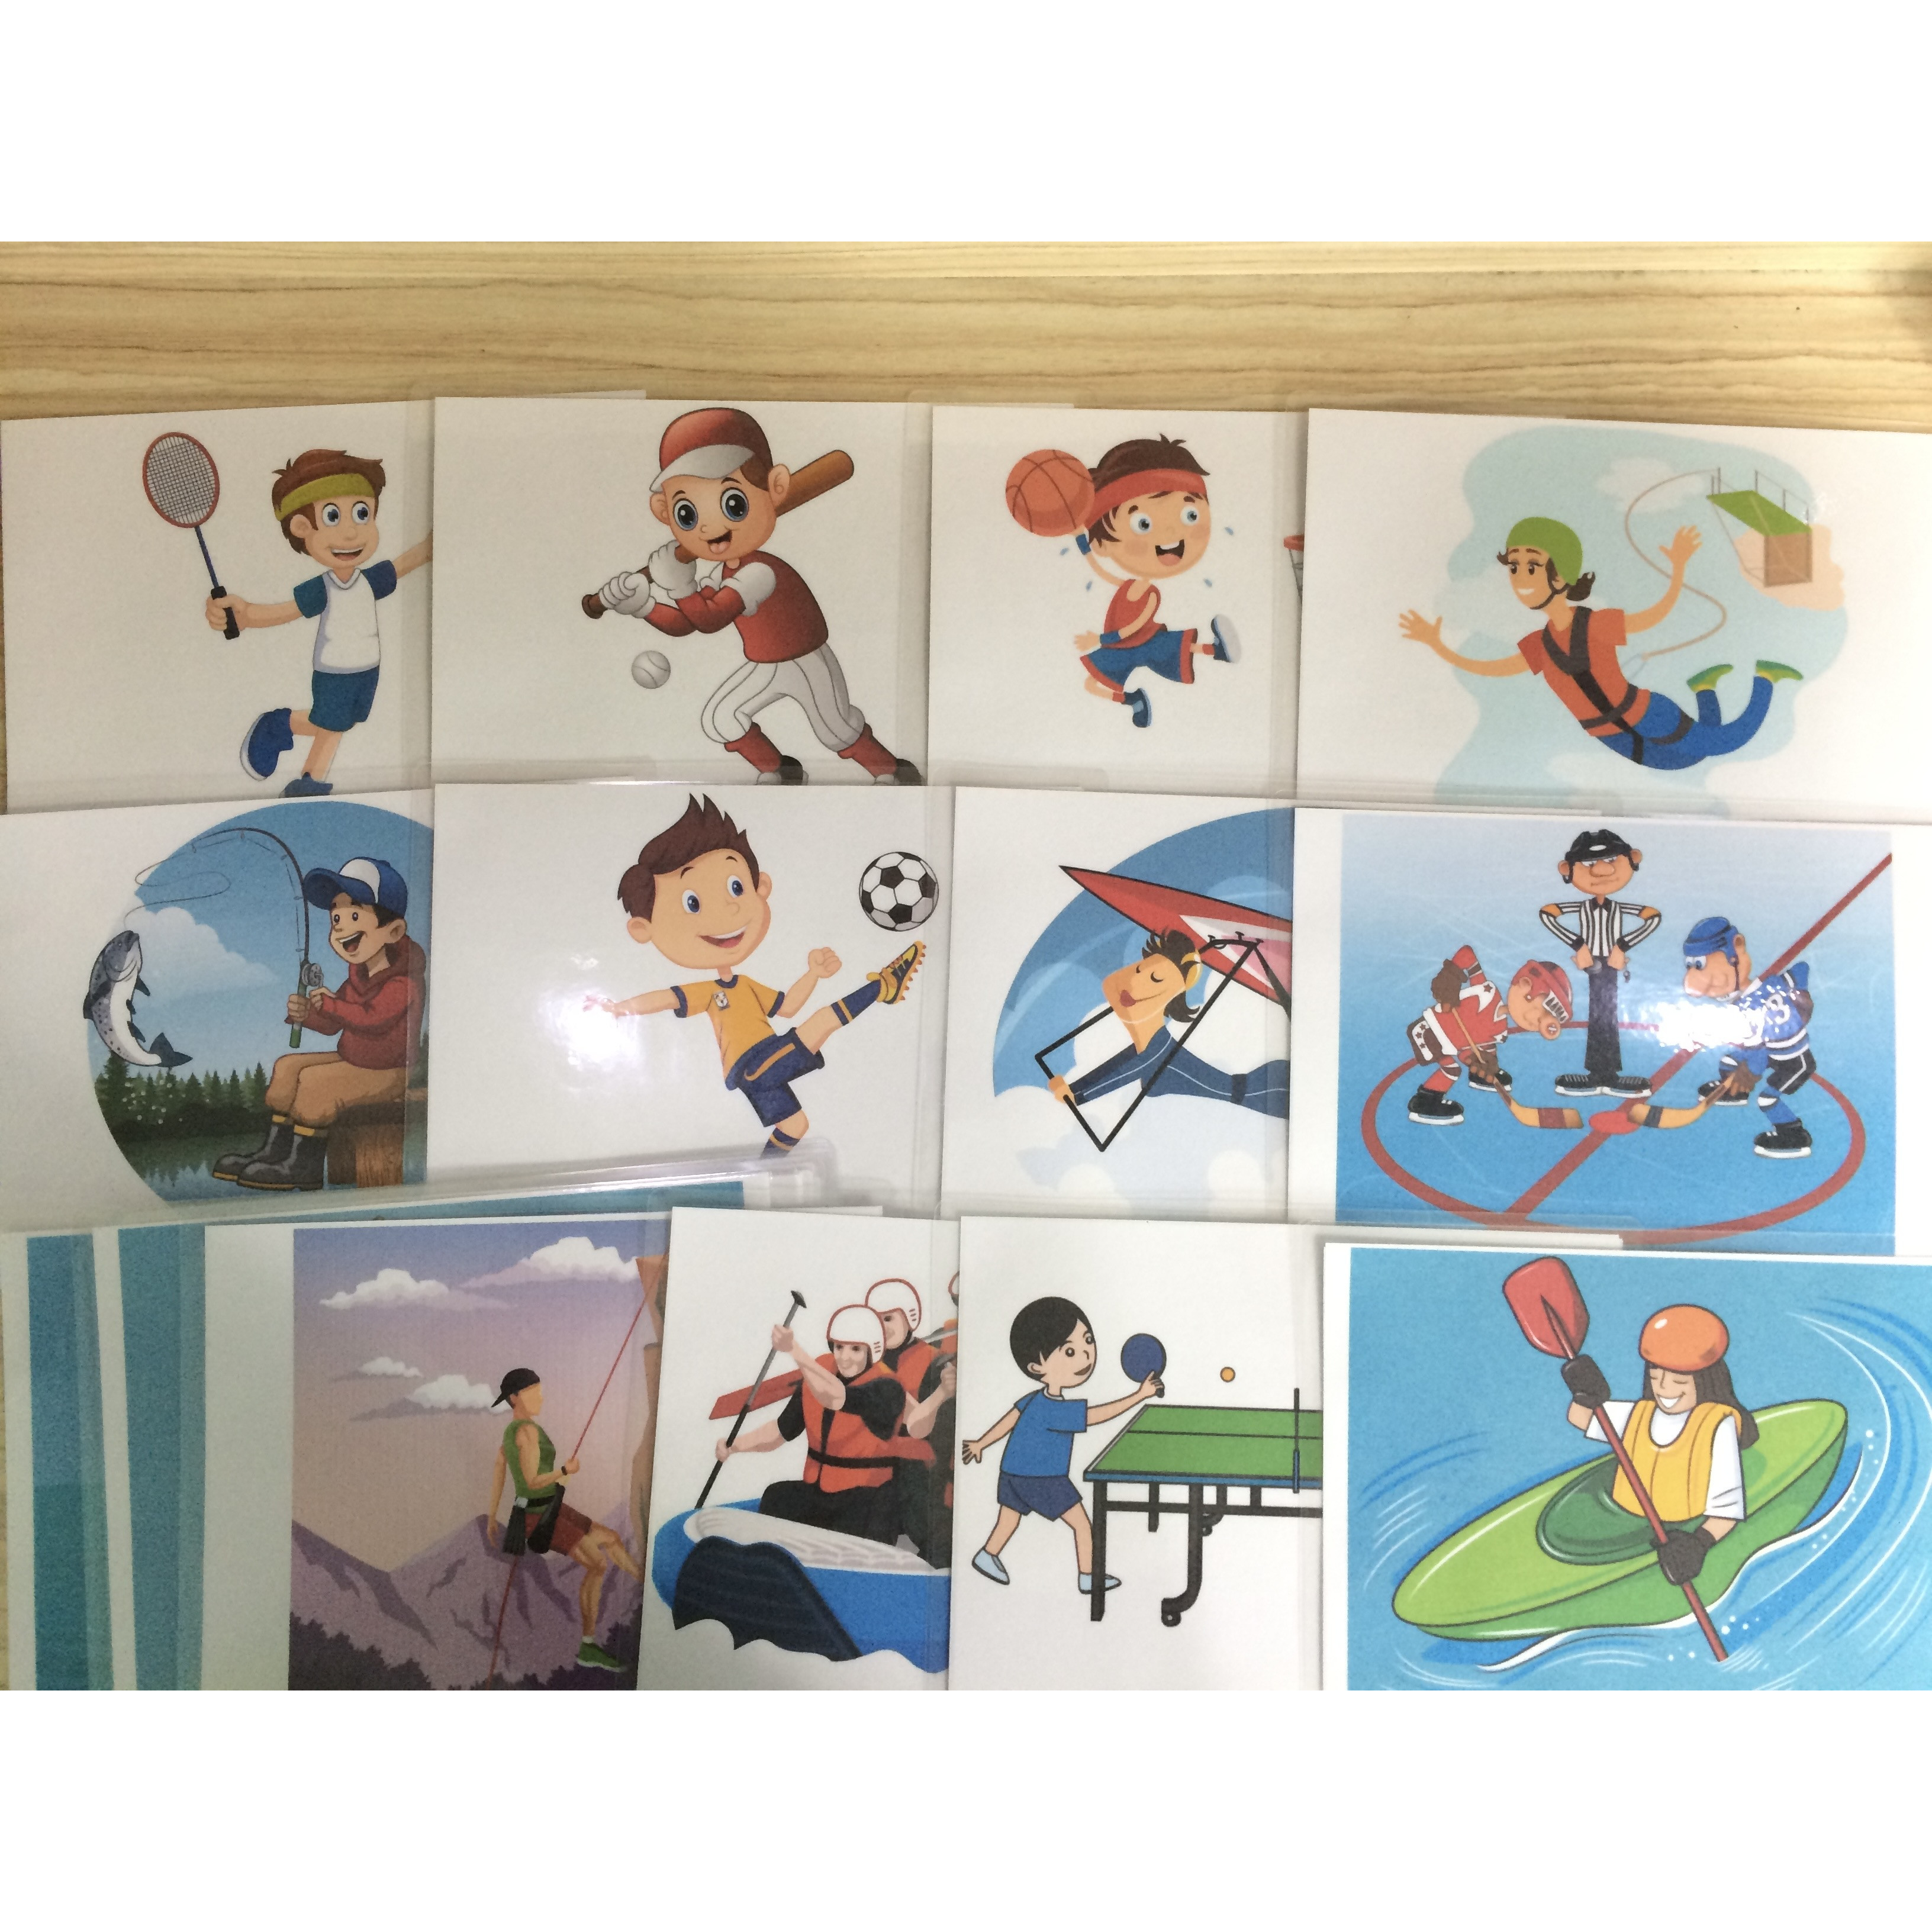 Sport Flashcards - Set 1 - Thẻ học tiếng Anh chủ đề Các môn thể thao - Bộ 1 (20 cards): Badminton, baseball, basketball, bungee jumping, fishing, football